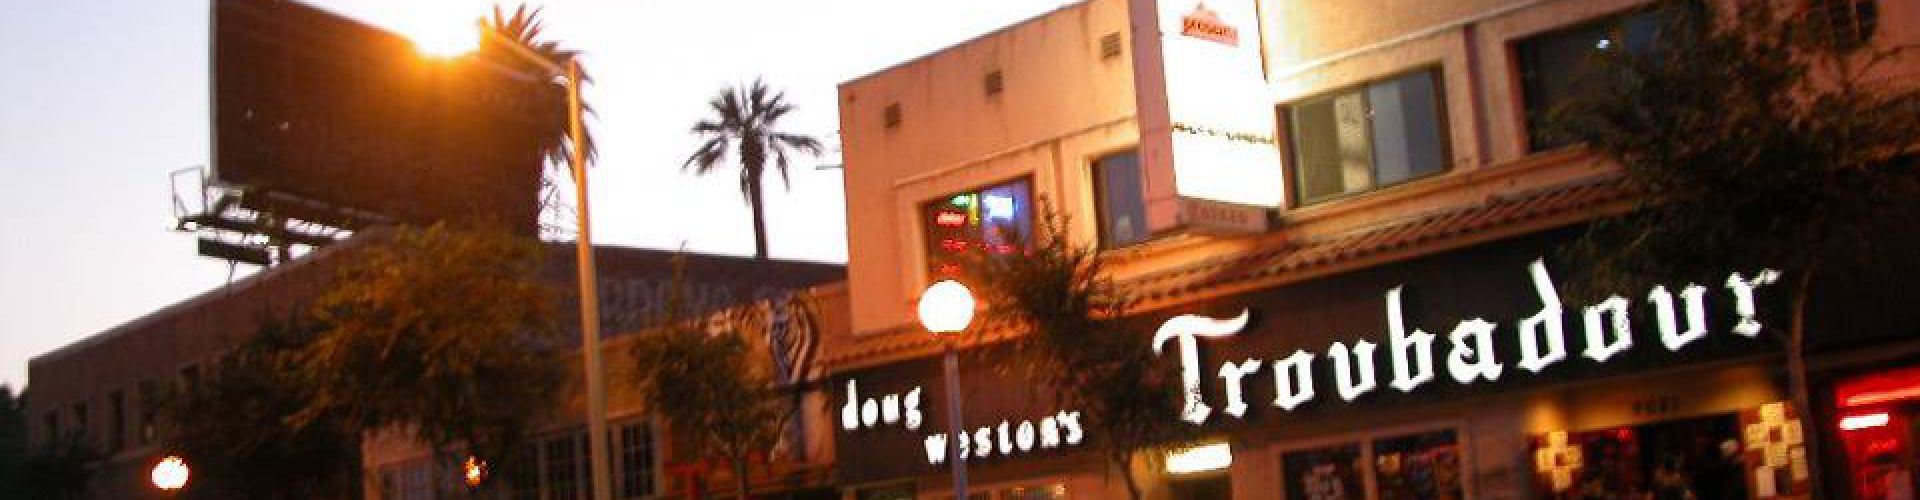 Troubadour Club LGBTQfriendly Los Angeles Reviews ellgeeBE